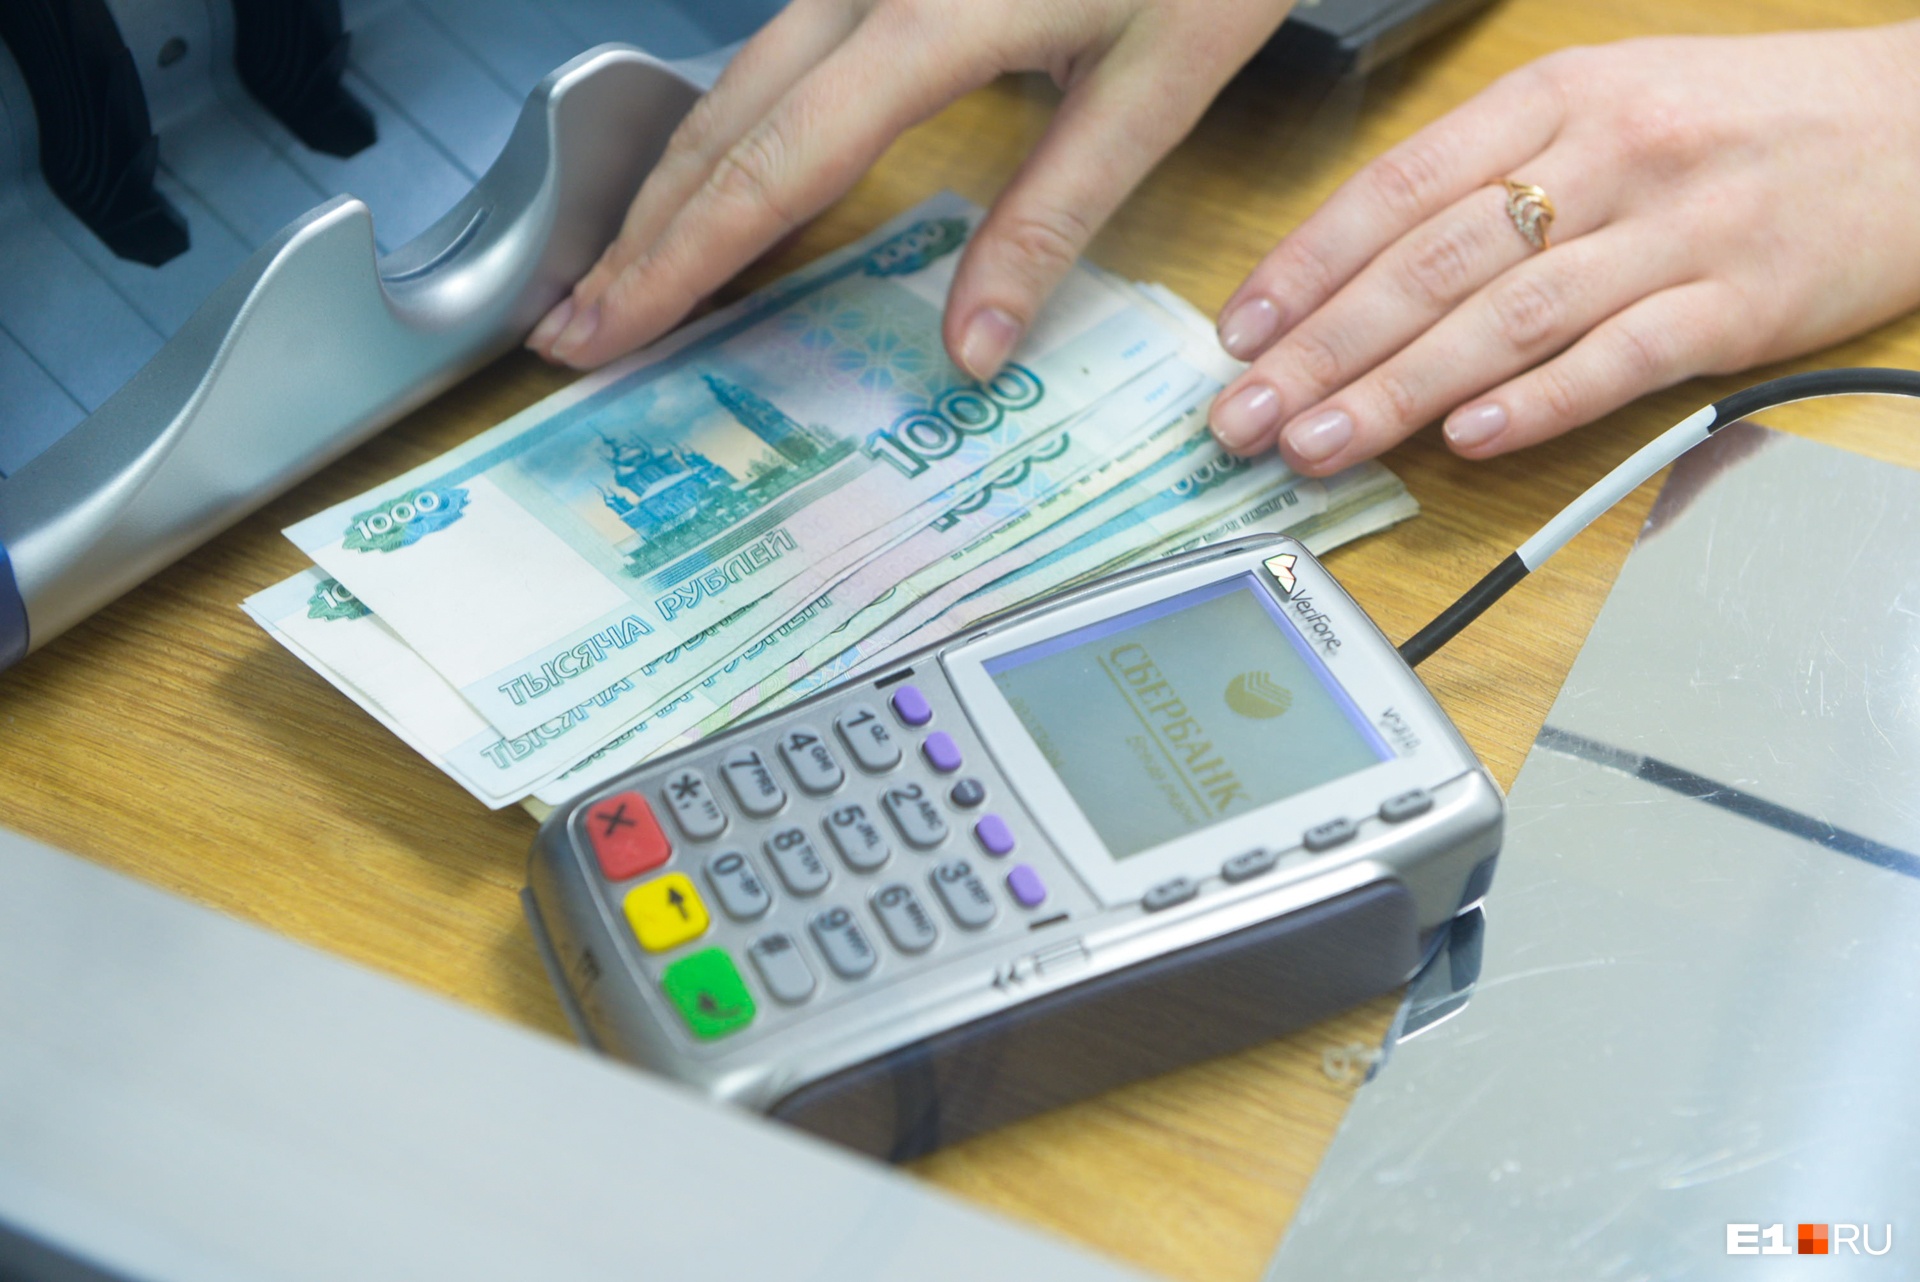 Бизнесмен из Екатеринбурга первым в стране получил кредит под 0%, чтобы выдать зарплату сотрудникам